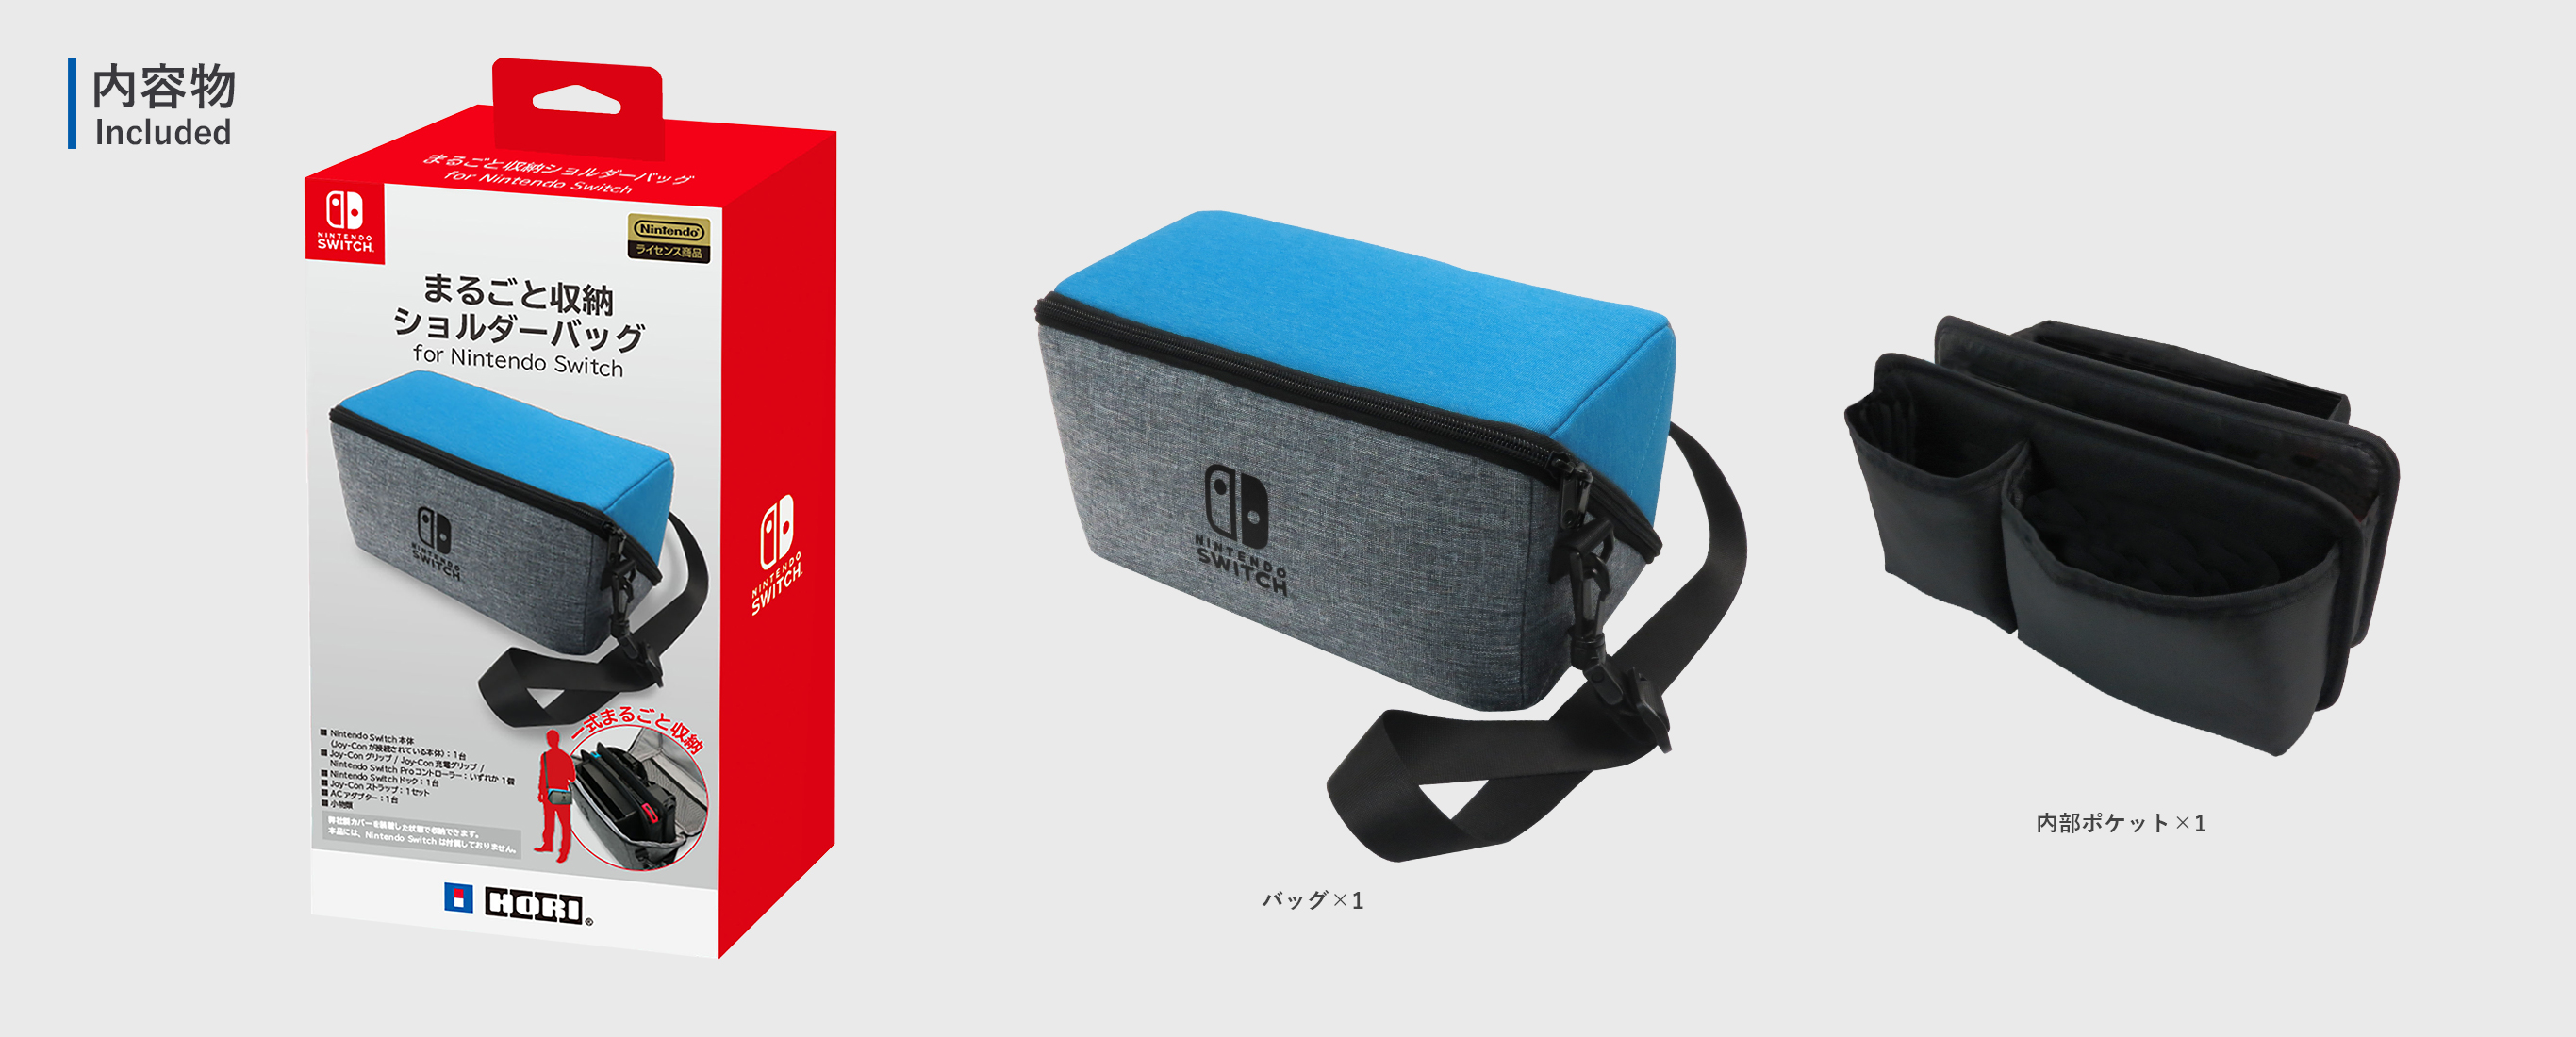 株式会社 HORI | まるごと収納ショルダーバッグ for Nintendo Switch